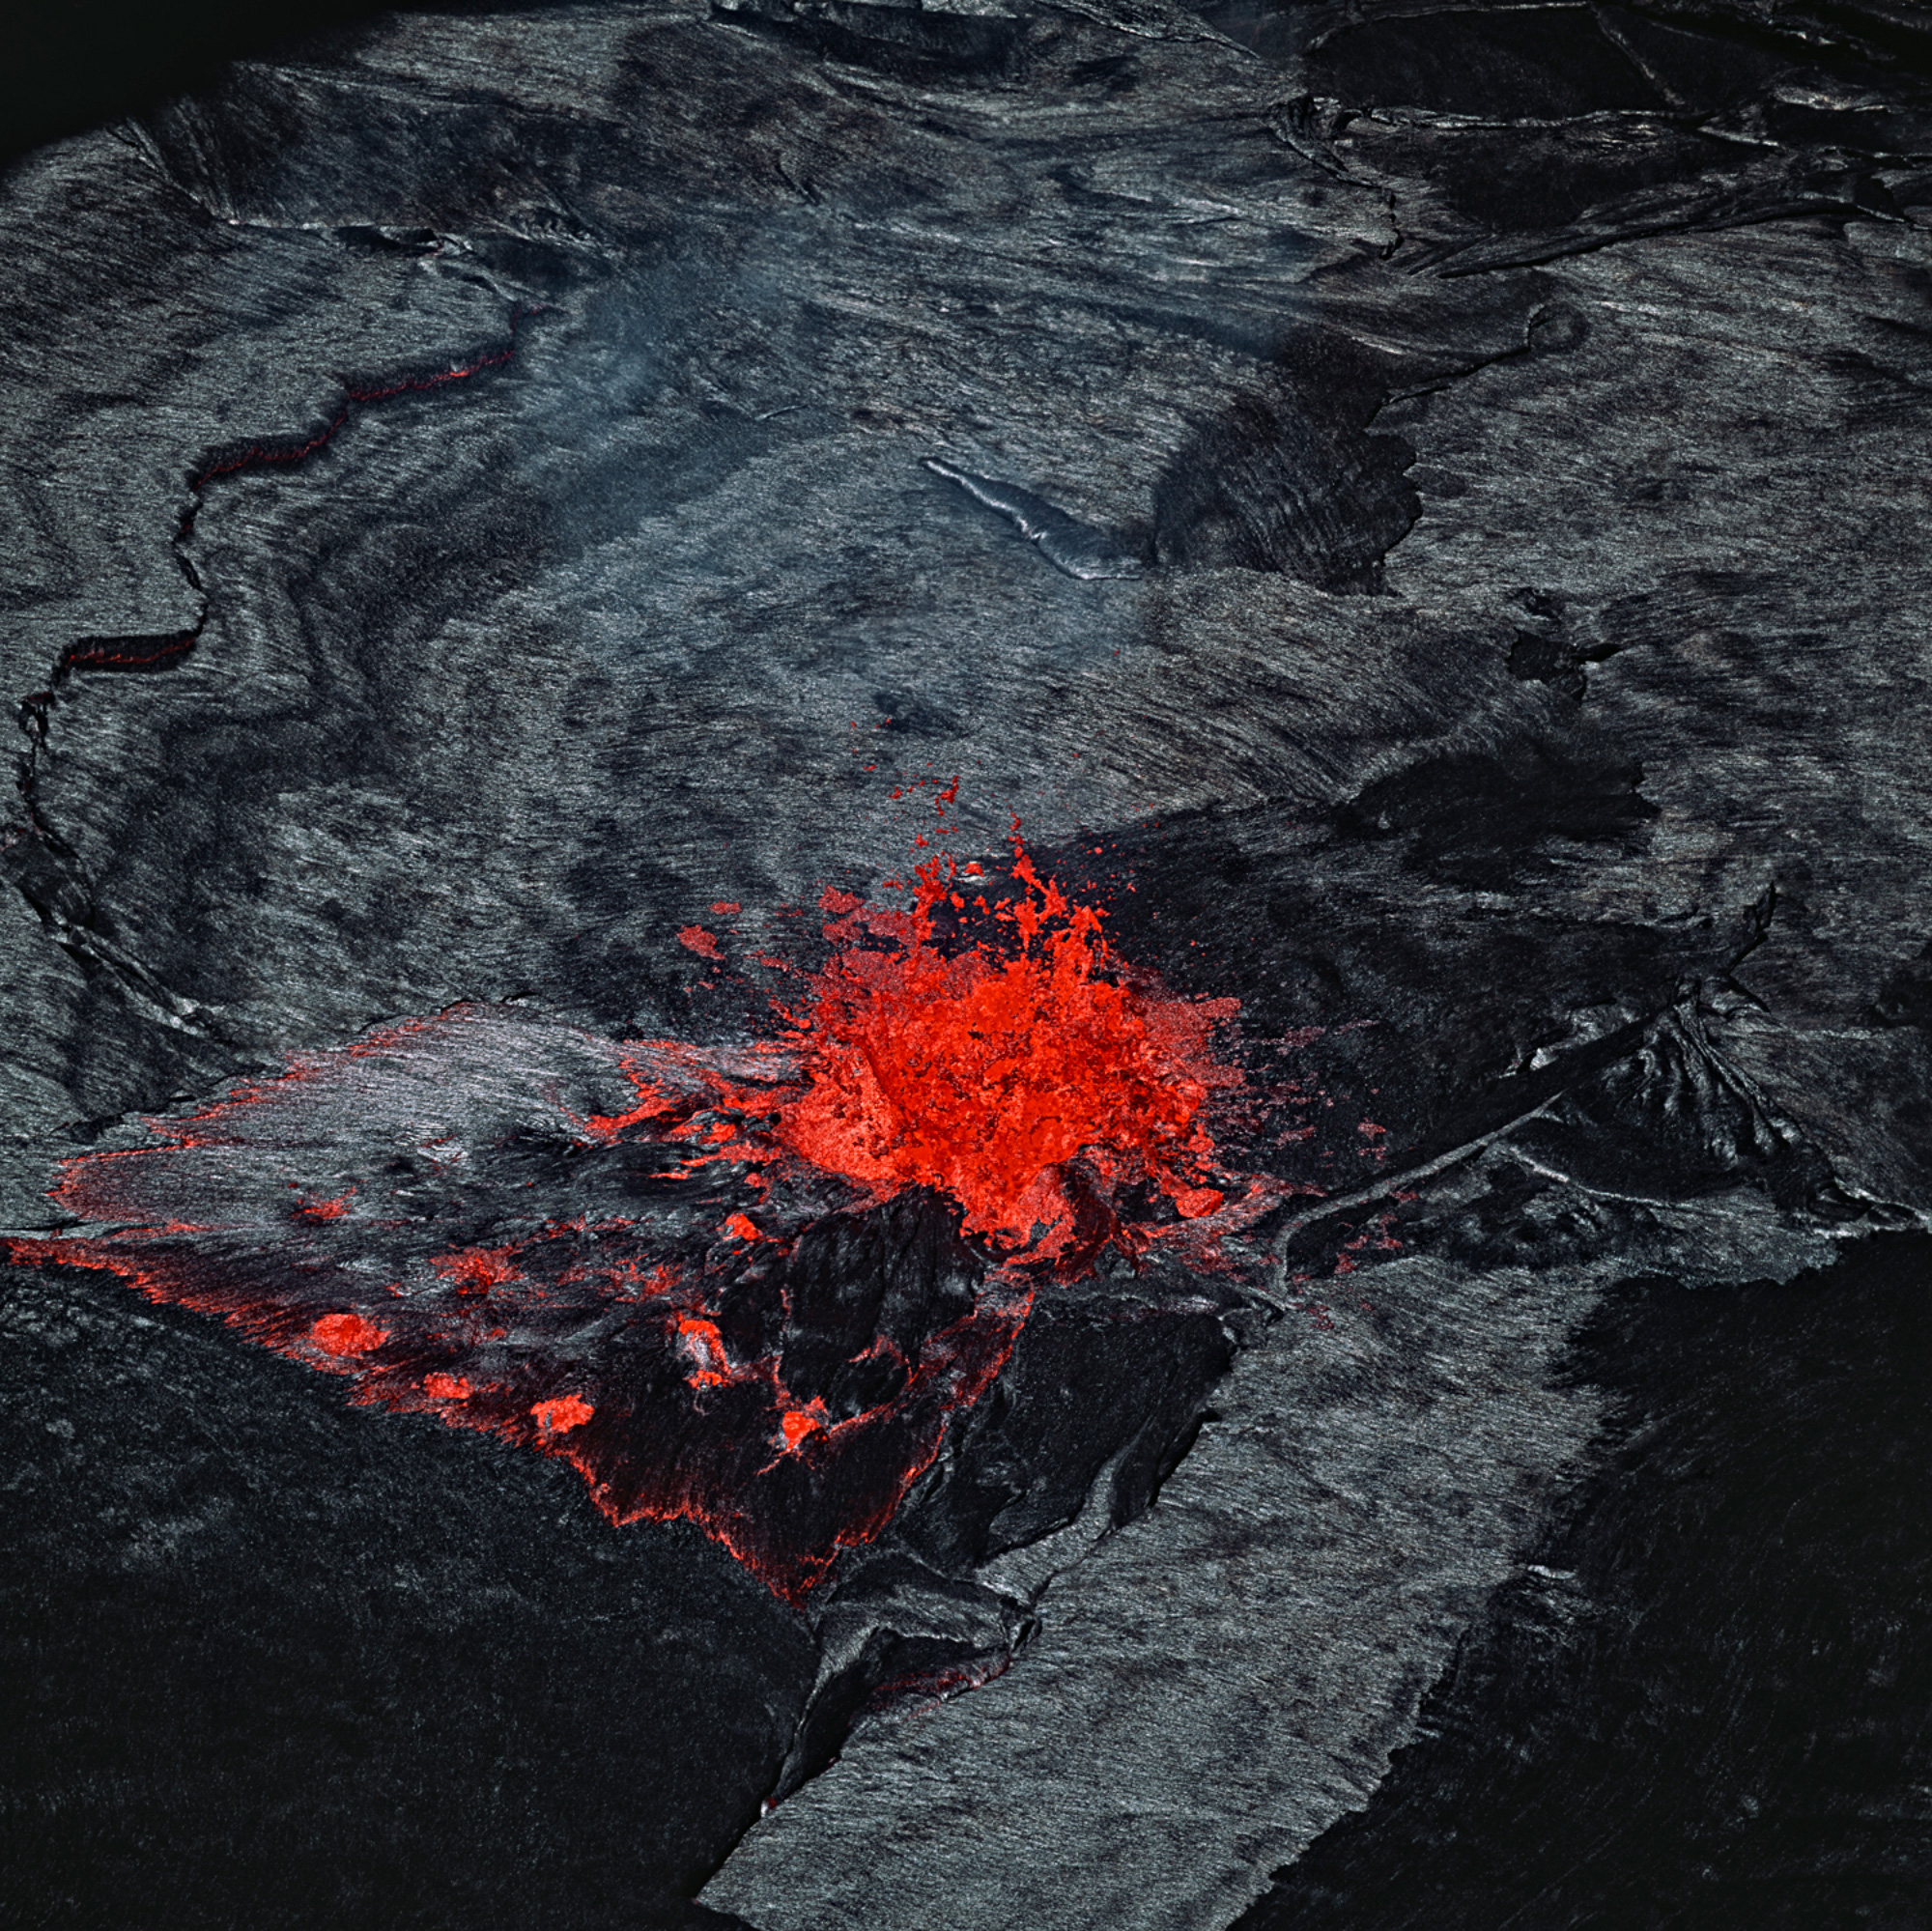 A bright red eruption against its black stony landscape at Rincon de la Vieja, Costa Rica 